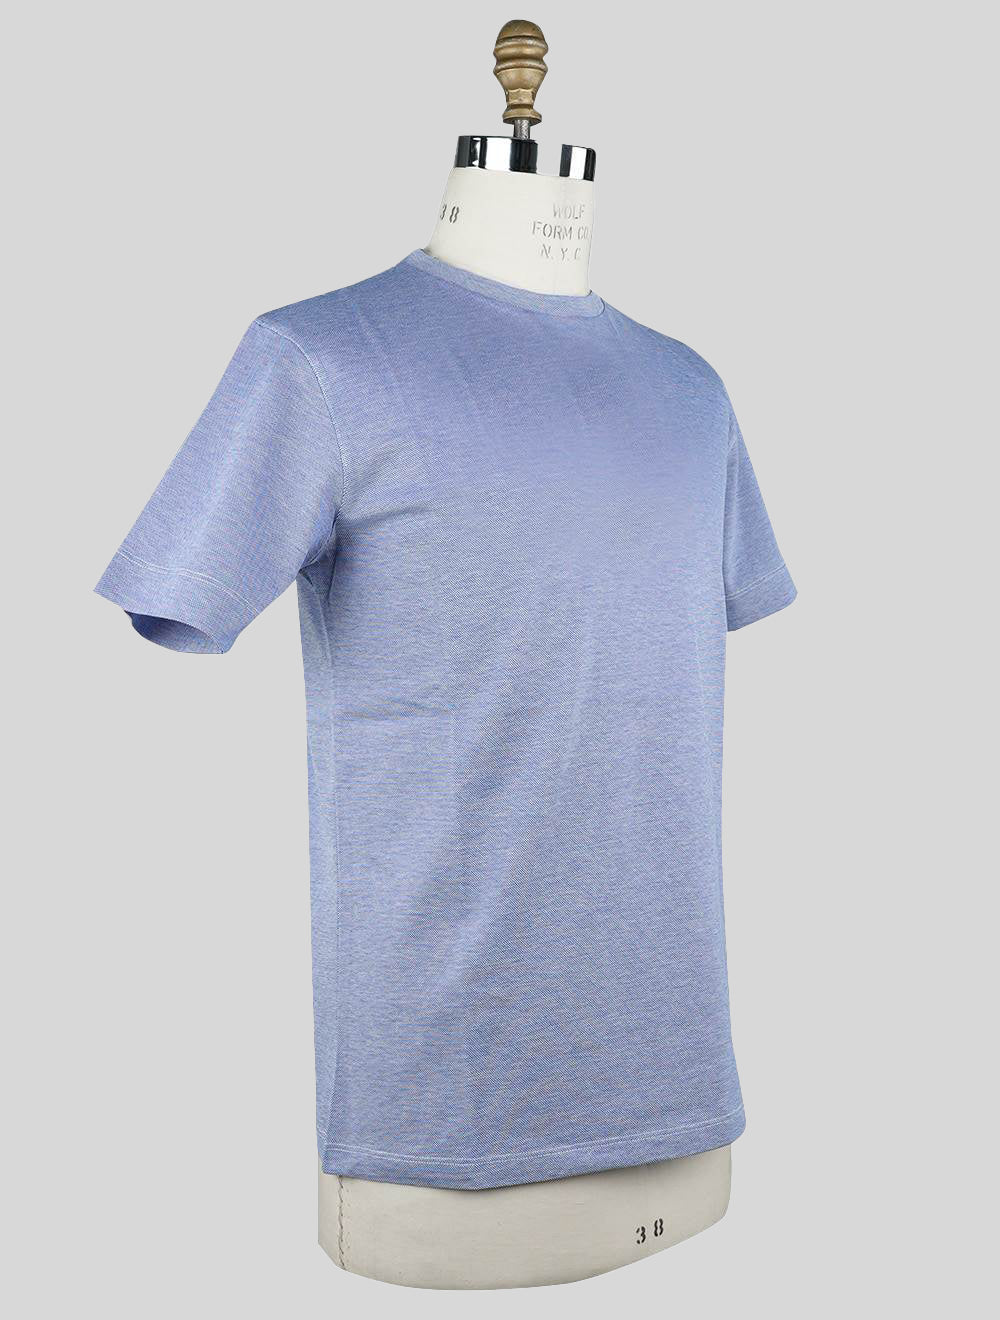 Sartorio Napoli camiseta azul claro de algodón